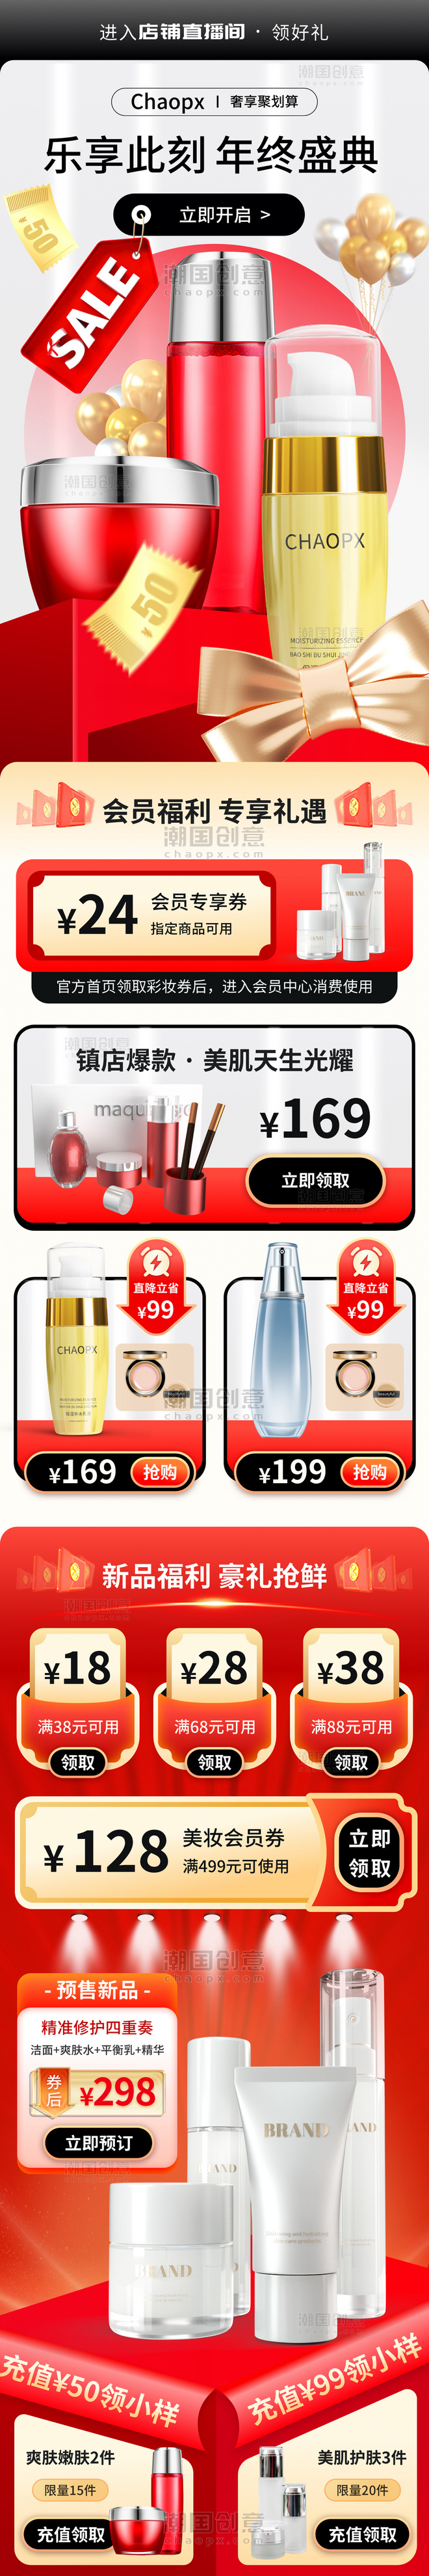 冬季护肤美妆化妆品电商首页促销h5营销活动长图